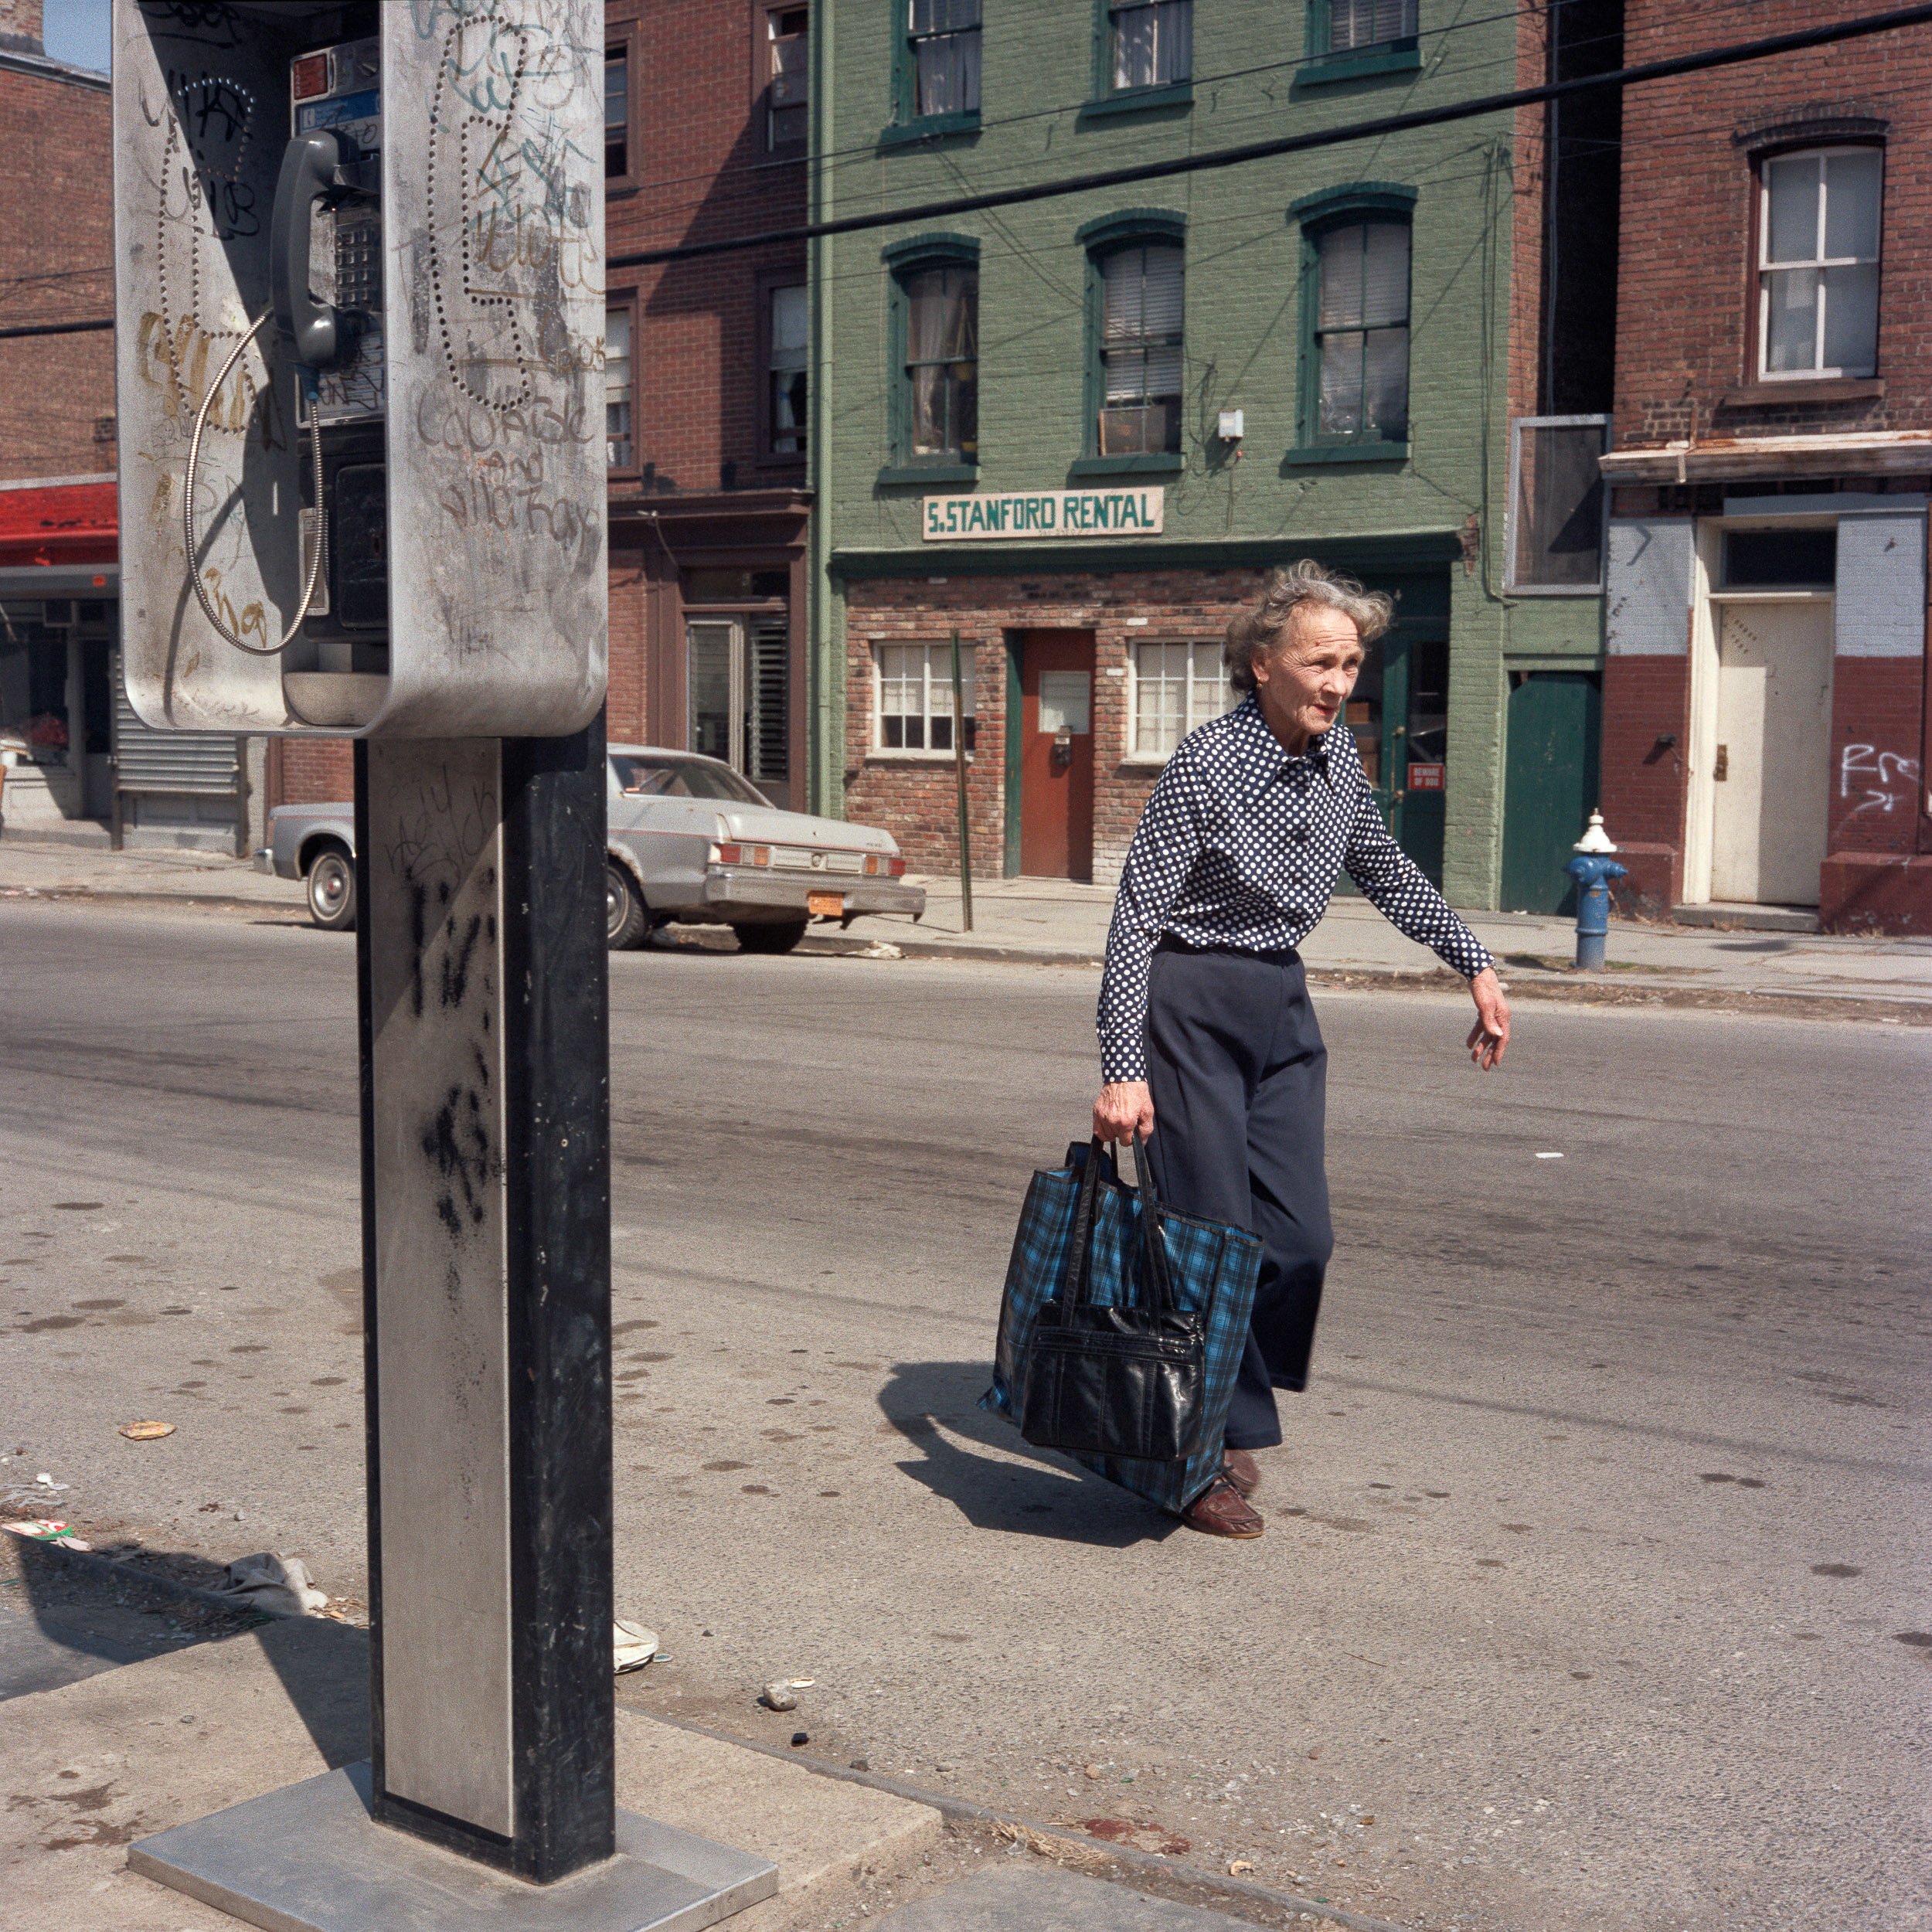   Woman Walking in the Street, 1986  